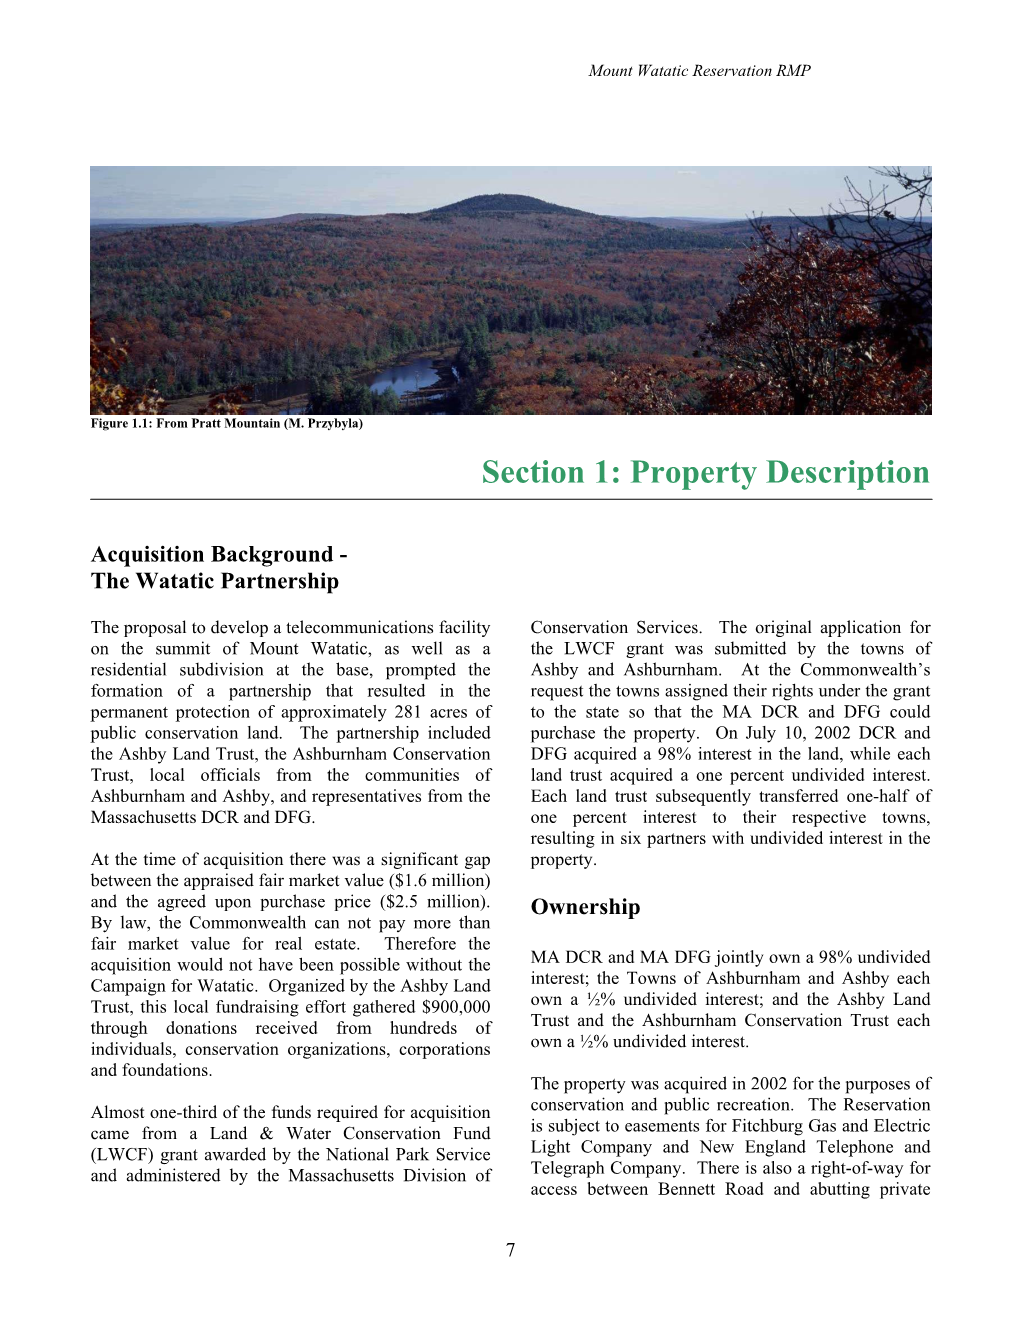 Section 1: Property Description